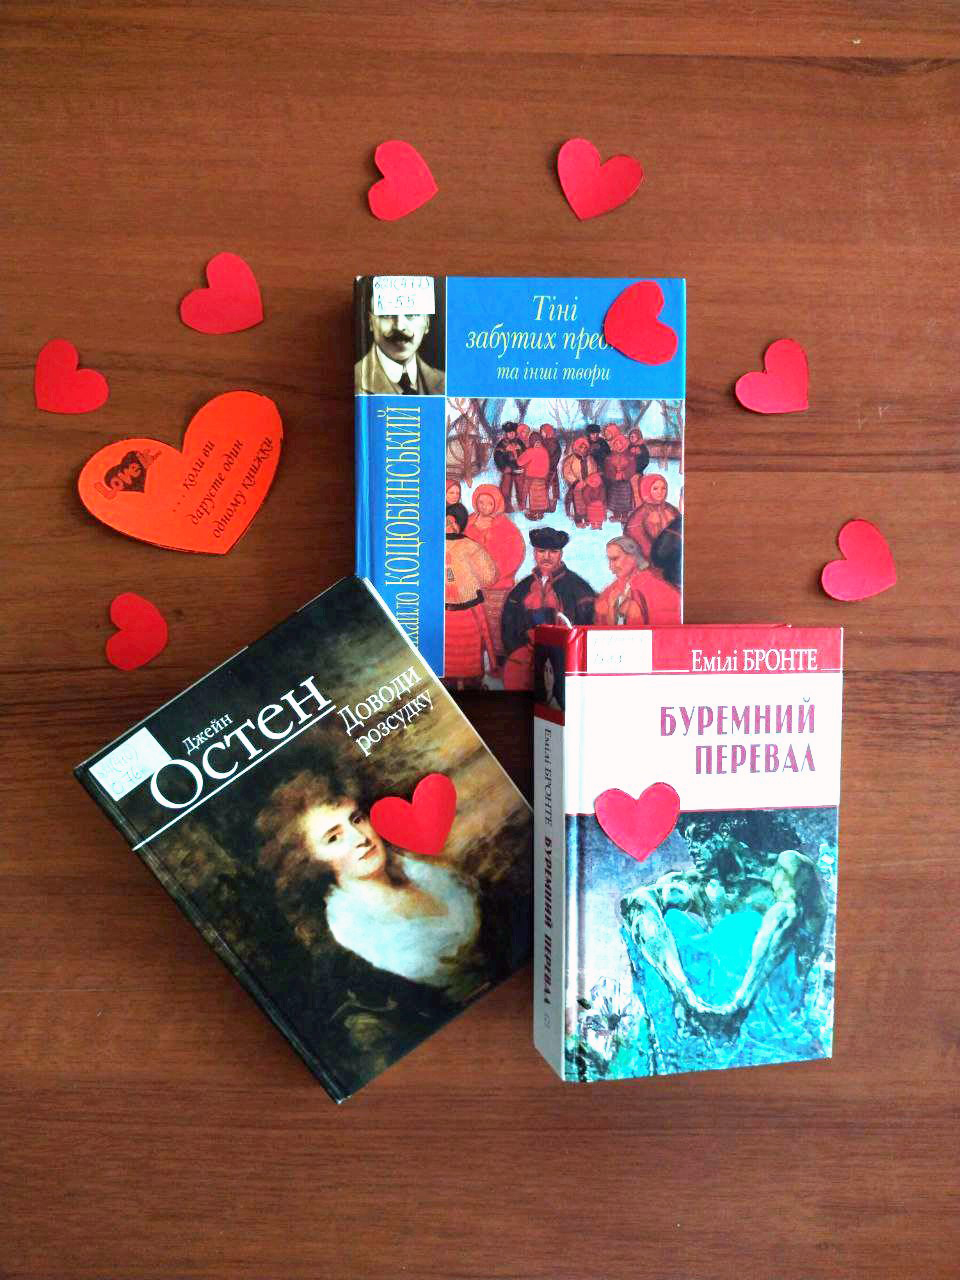 ТОП-3 книги о любви от Библиотеки на Шевченко